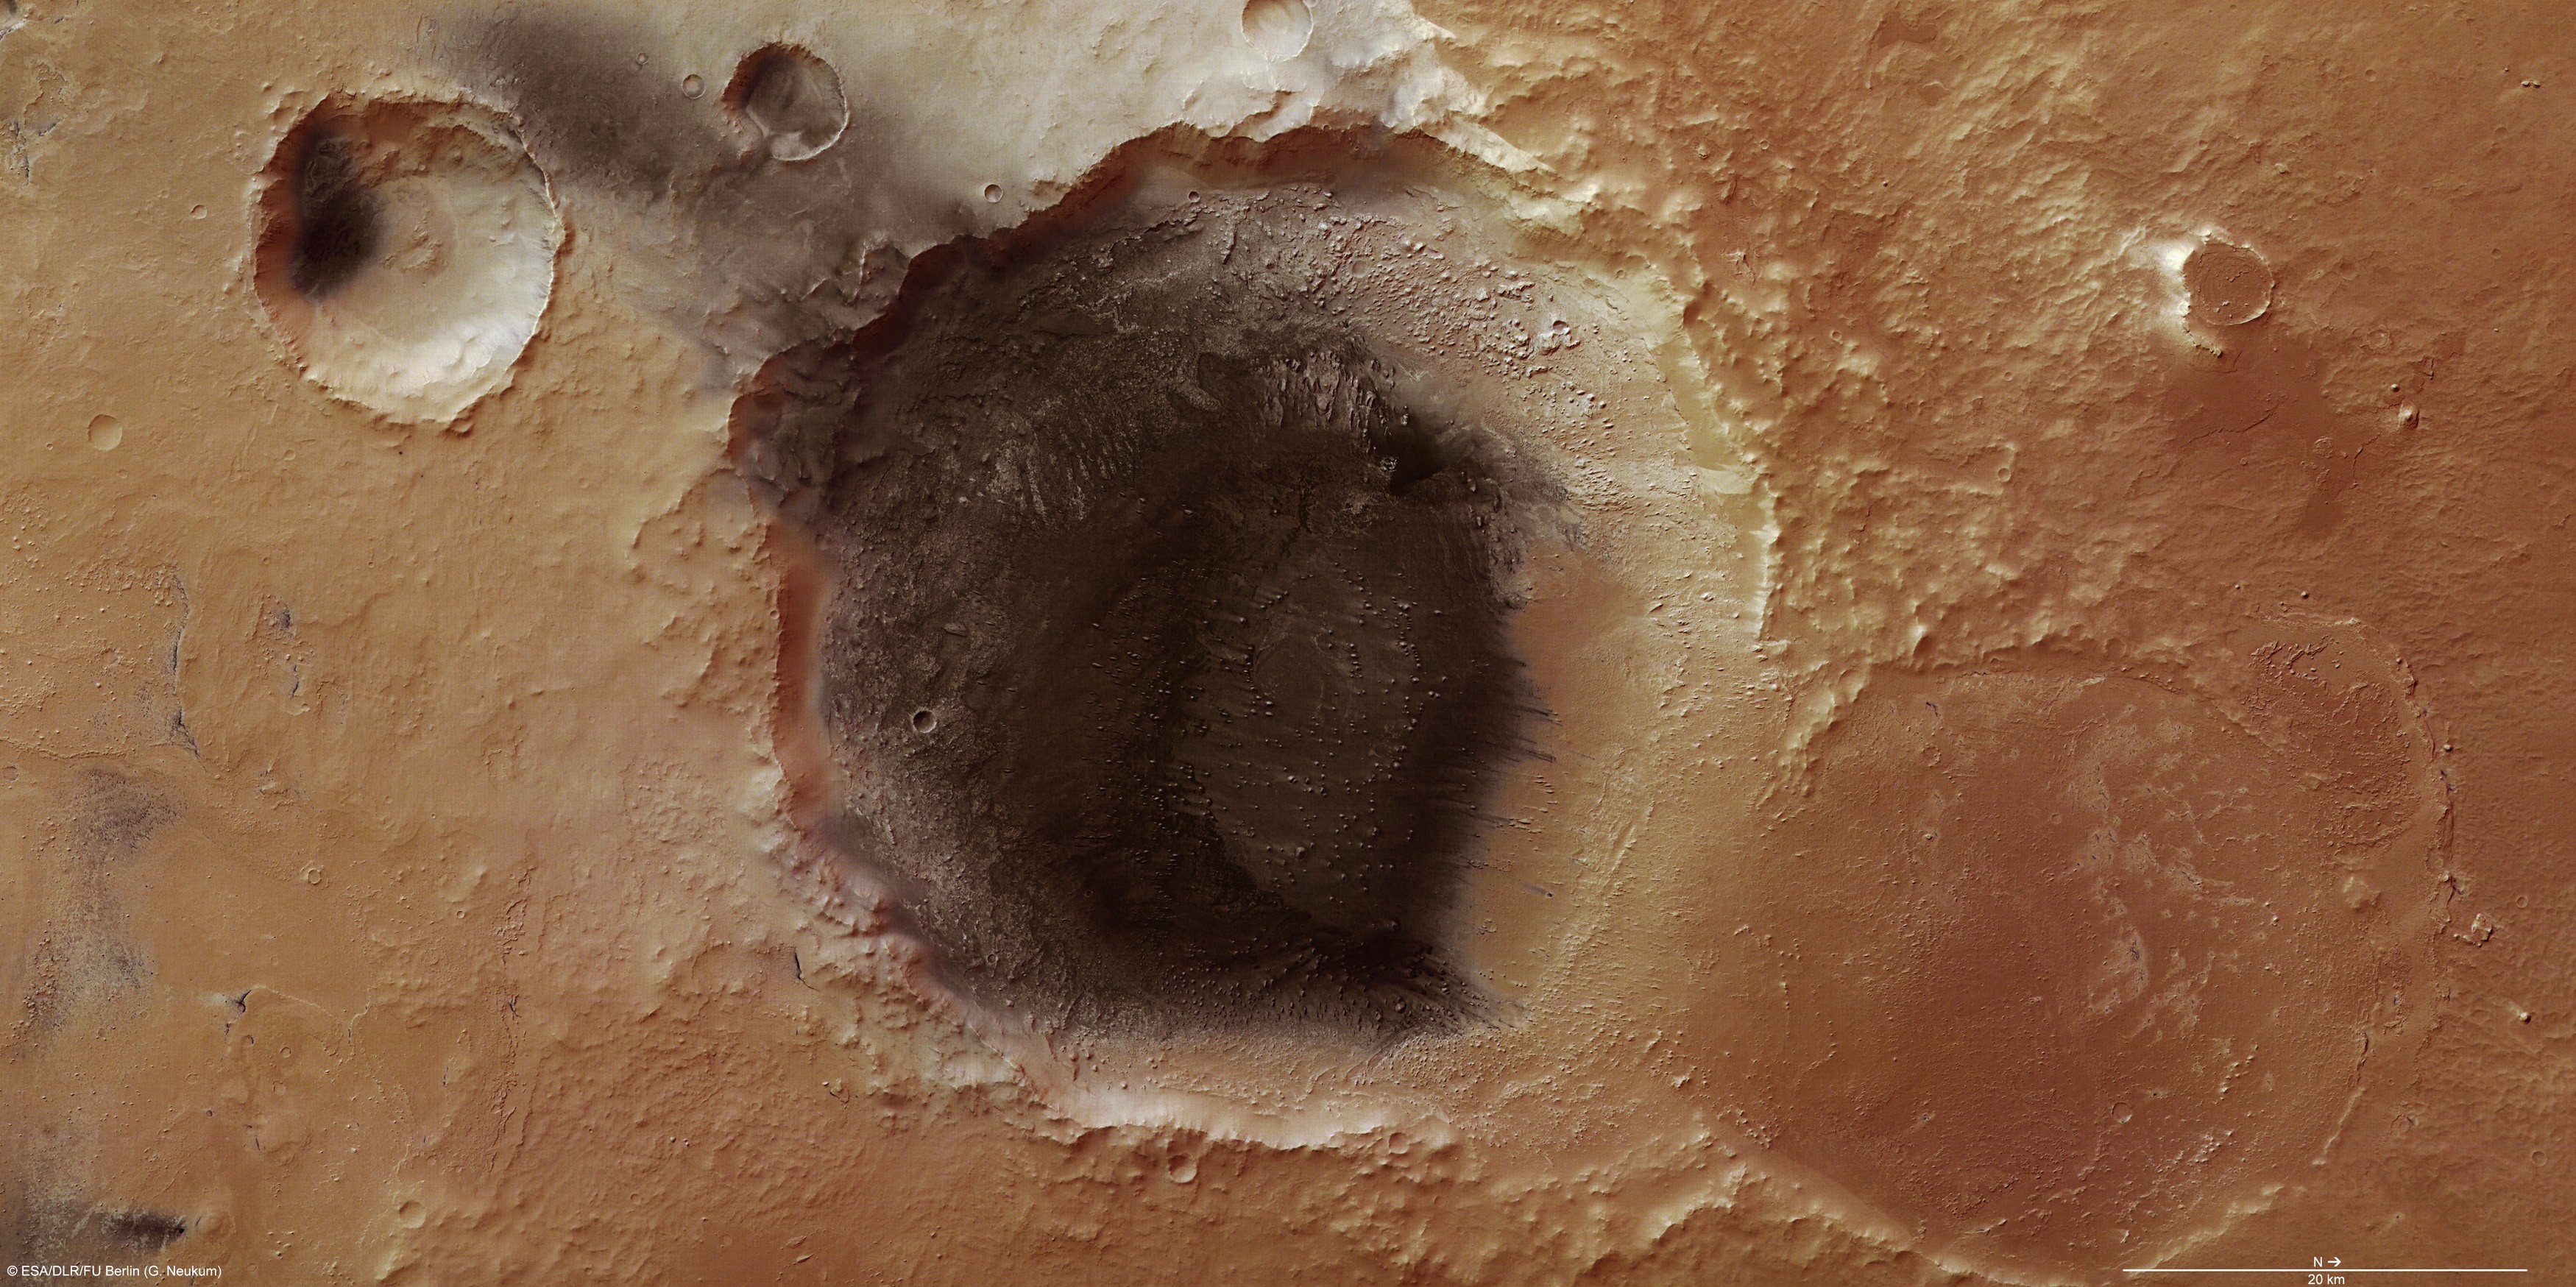 La caméra à haute résolution de Mars Express montre de nombreux détails dans cette région de Meridiani Planum, où un dépôt de cendres volcaniques semble s'échapper d'un cratère, soufflé par le vent. Crédit : Esa/DLR/Fu Berlin (G. Neukum)
